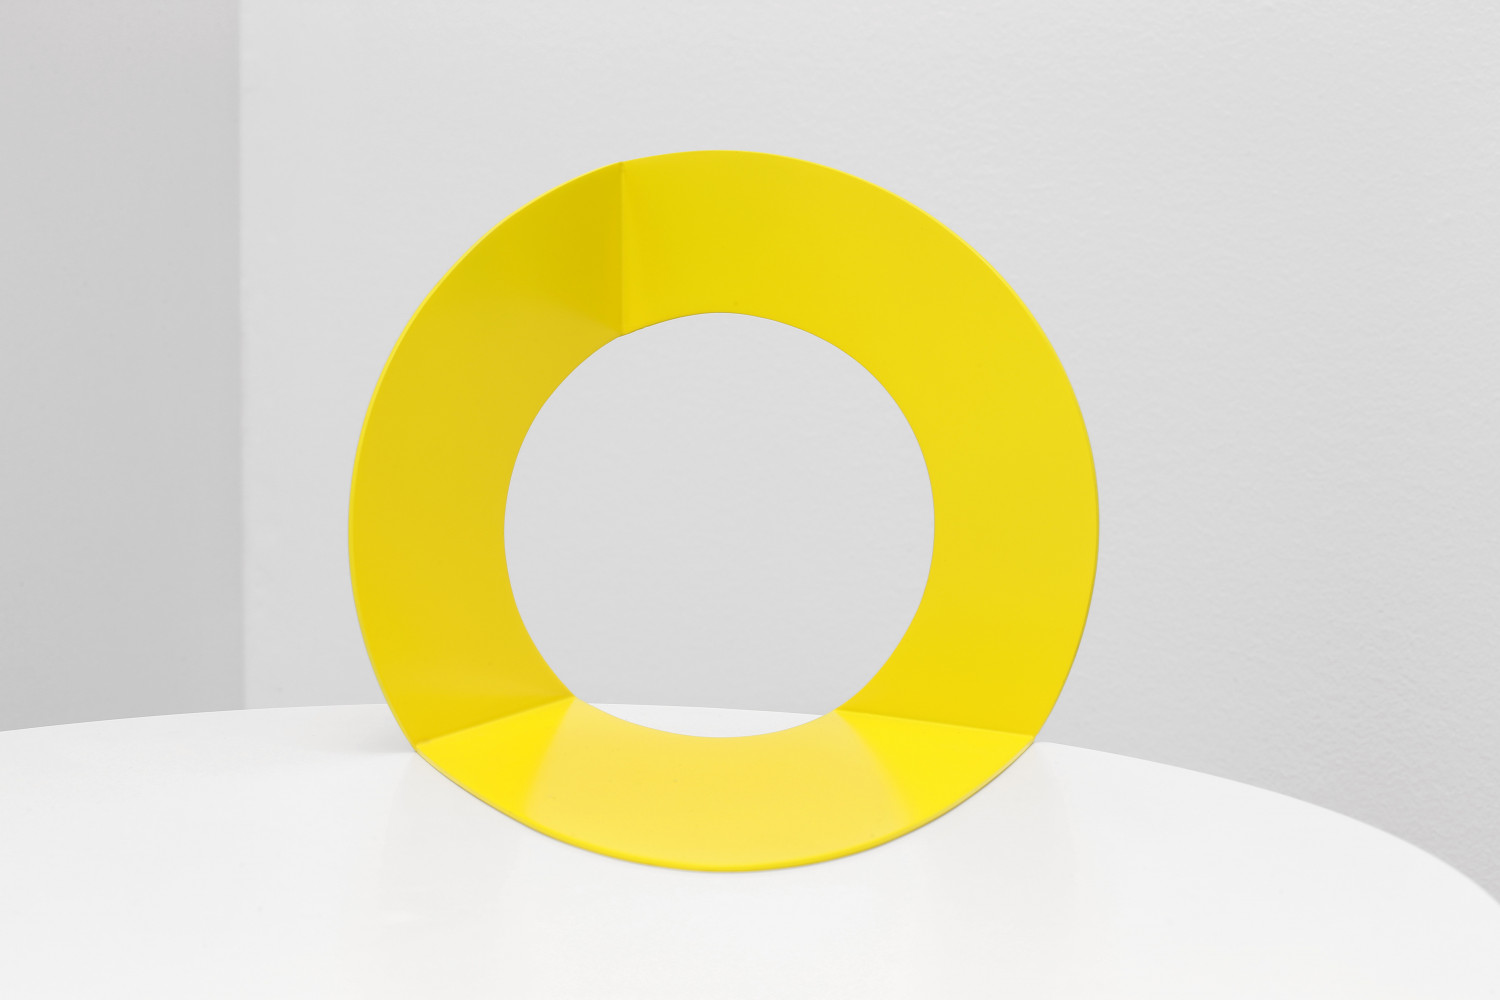 Felice Varini, ‘Cercle jaune’, 0013–2013, raw iron sheet laser cut and painted white 